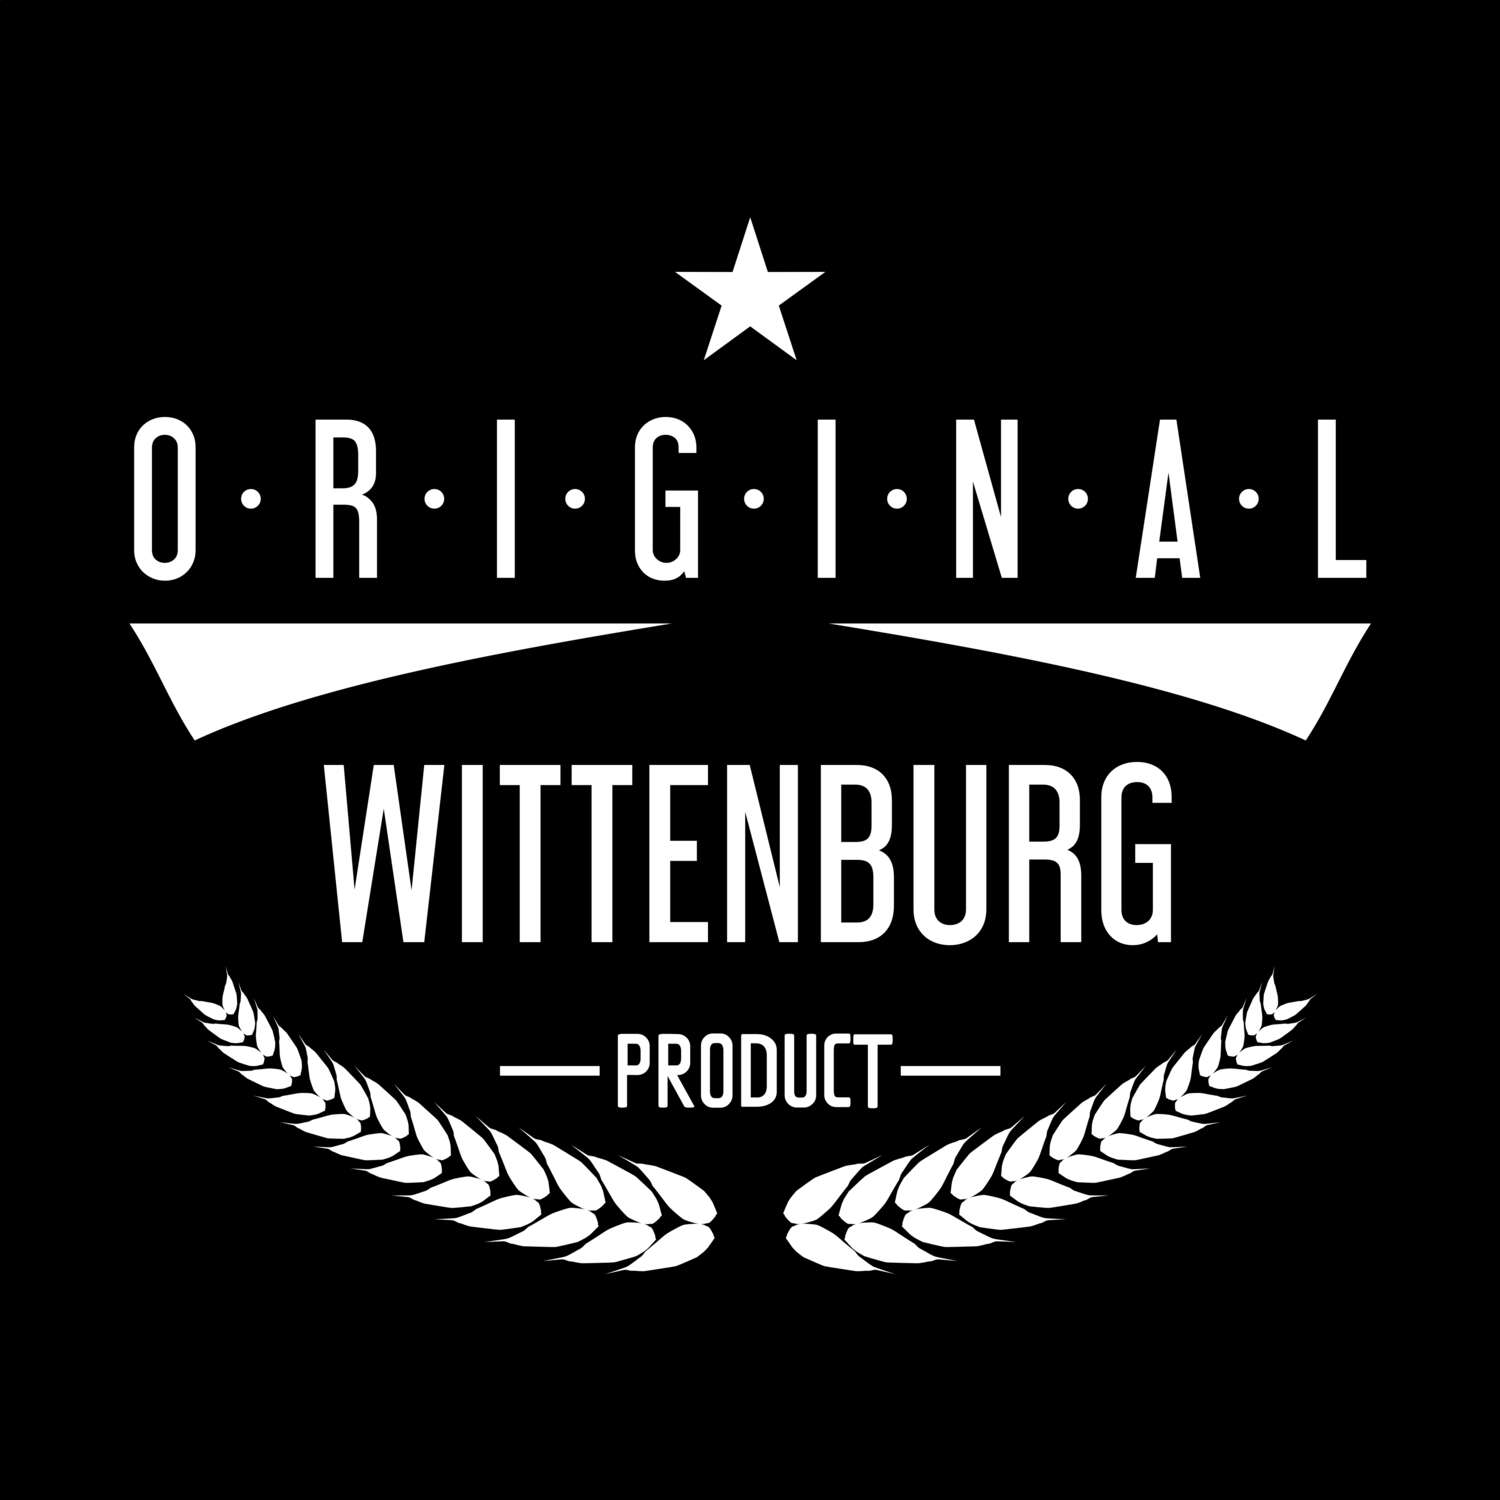 Wittenburg T-Shirt »Original Product«